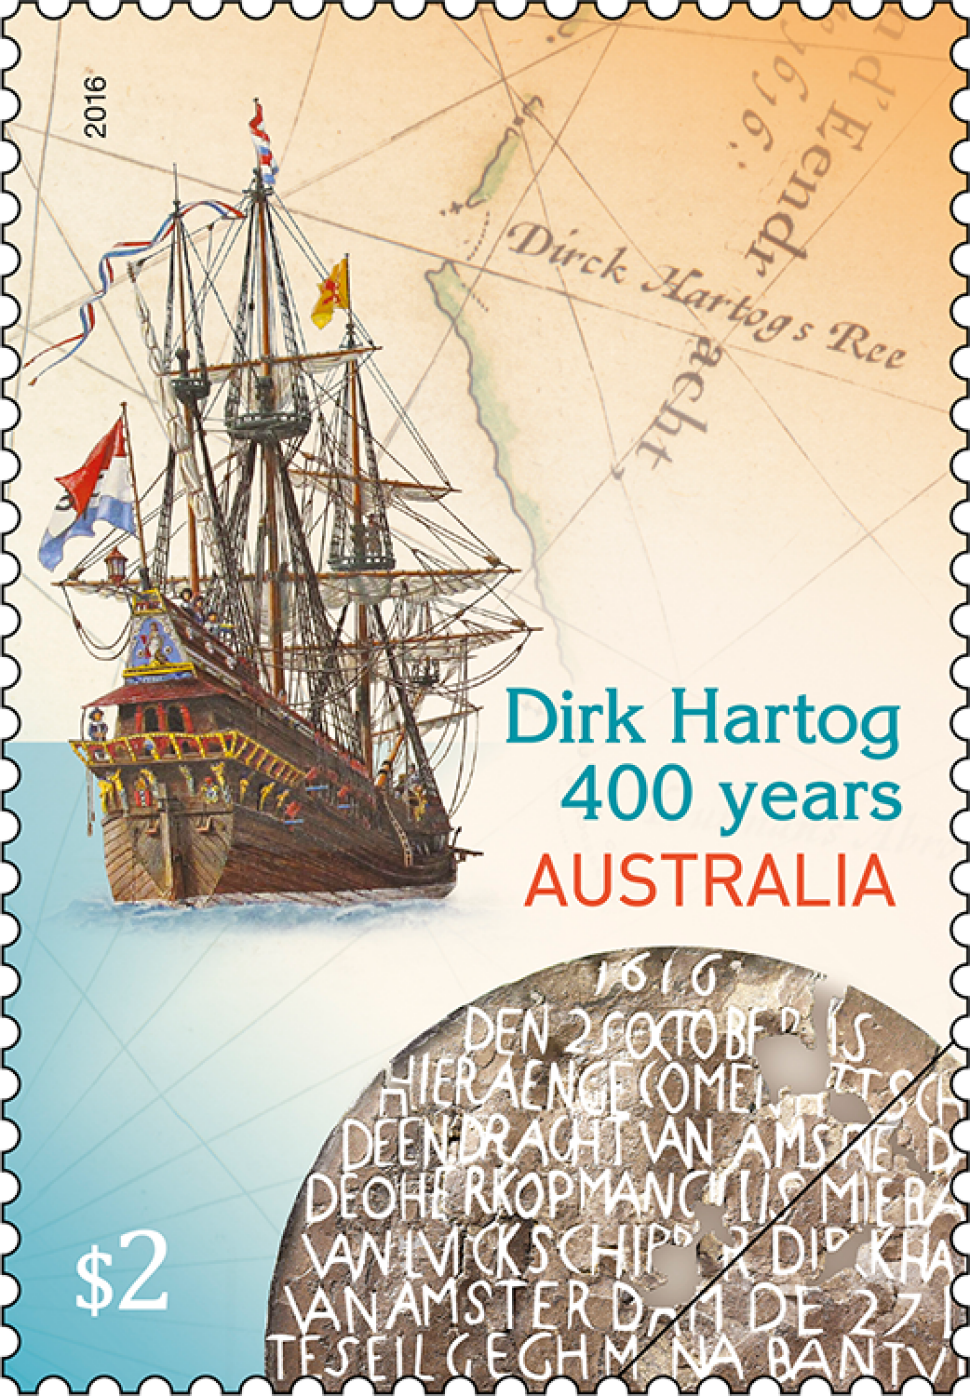 Dirk Hartog’s Landing: 400 years